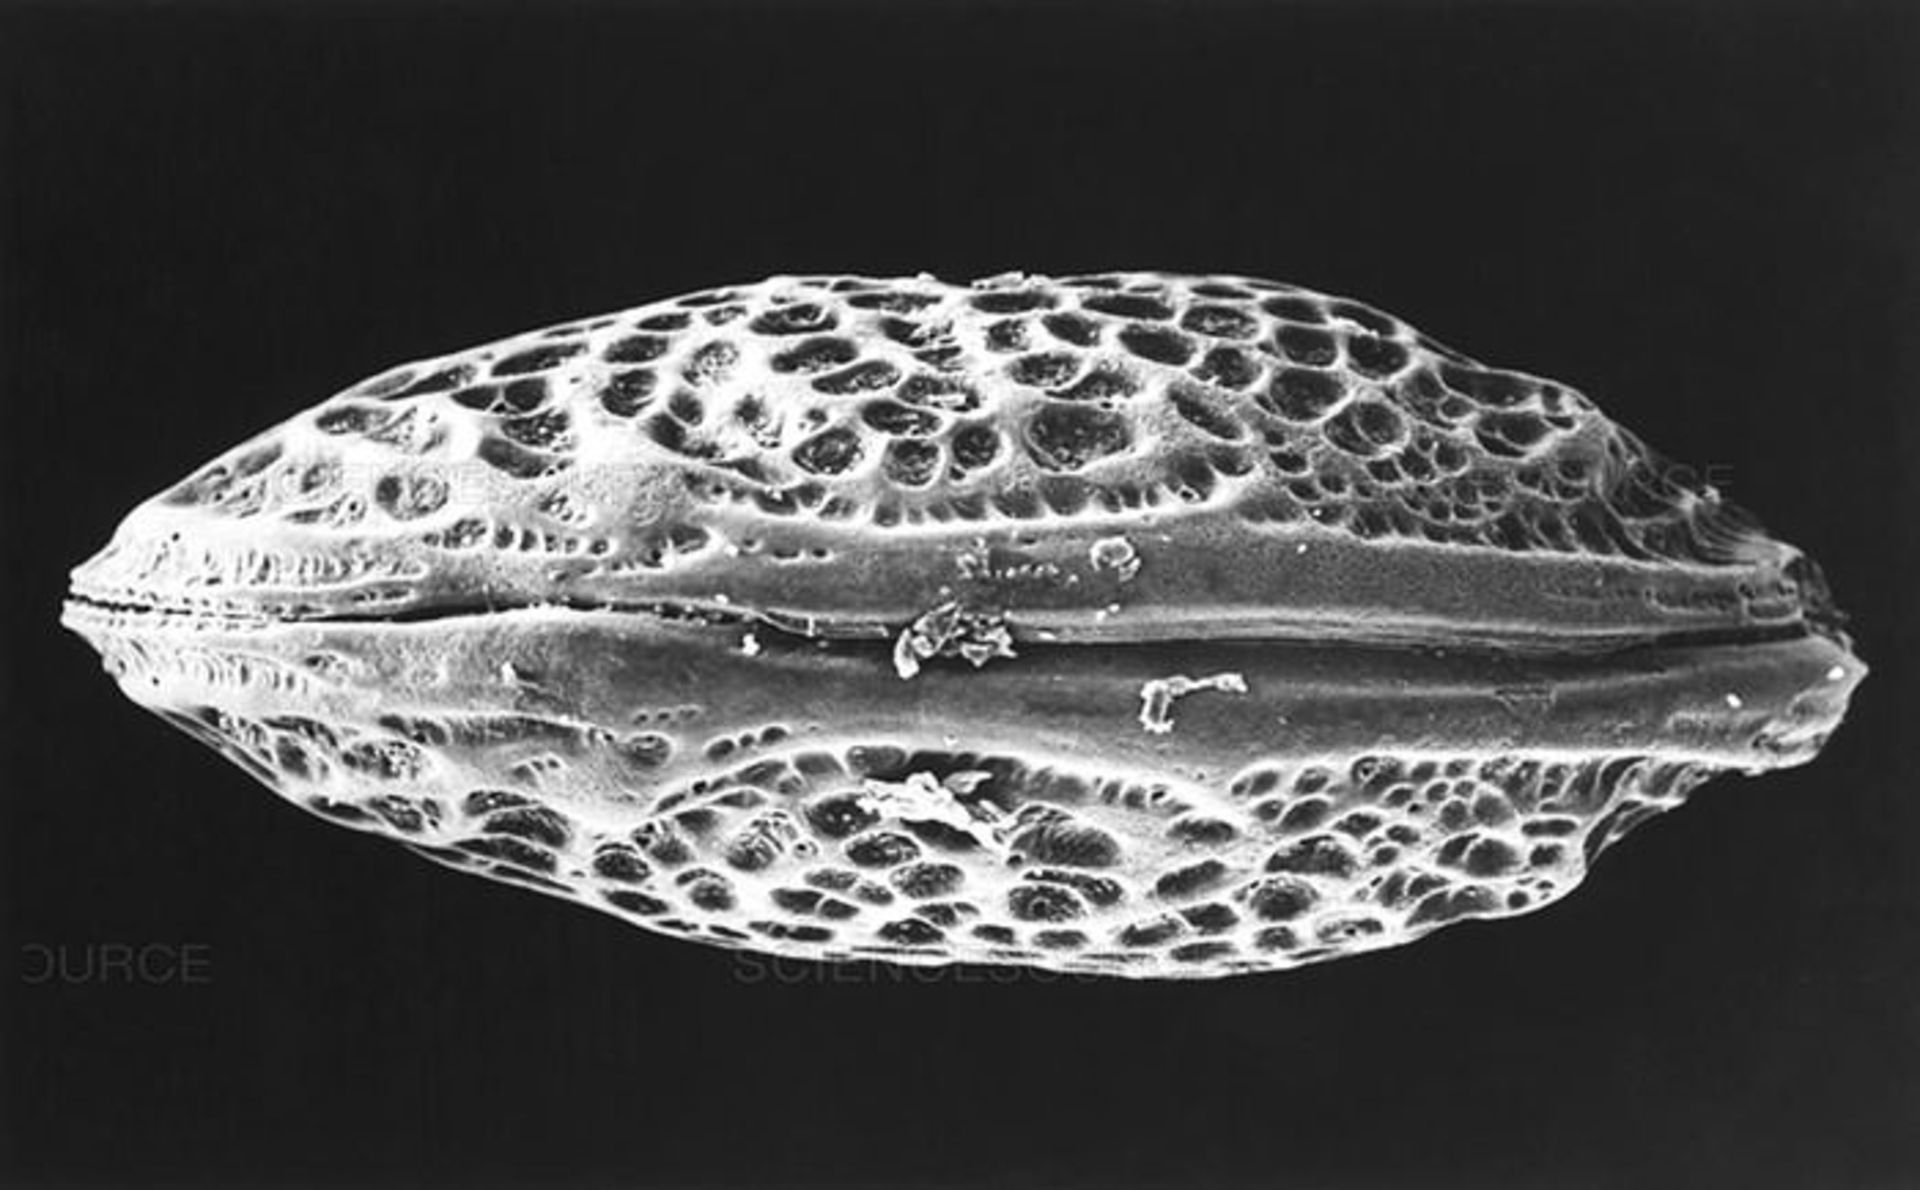 تصویر تهیه شده با میکروسکوپ SEM از فسیل استراکود